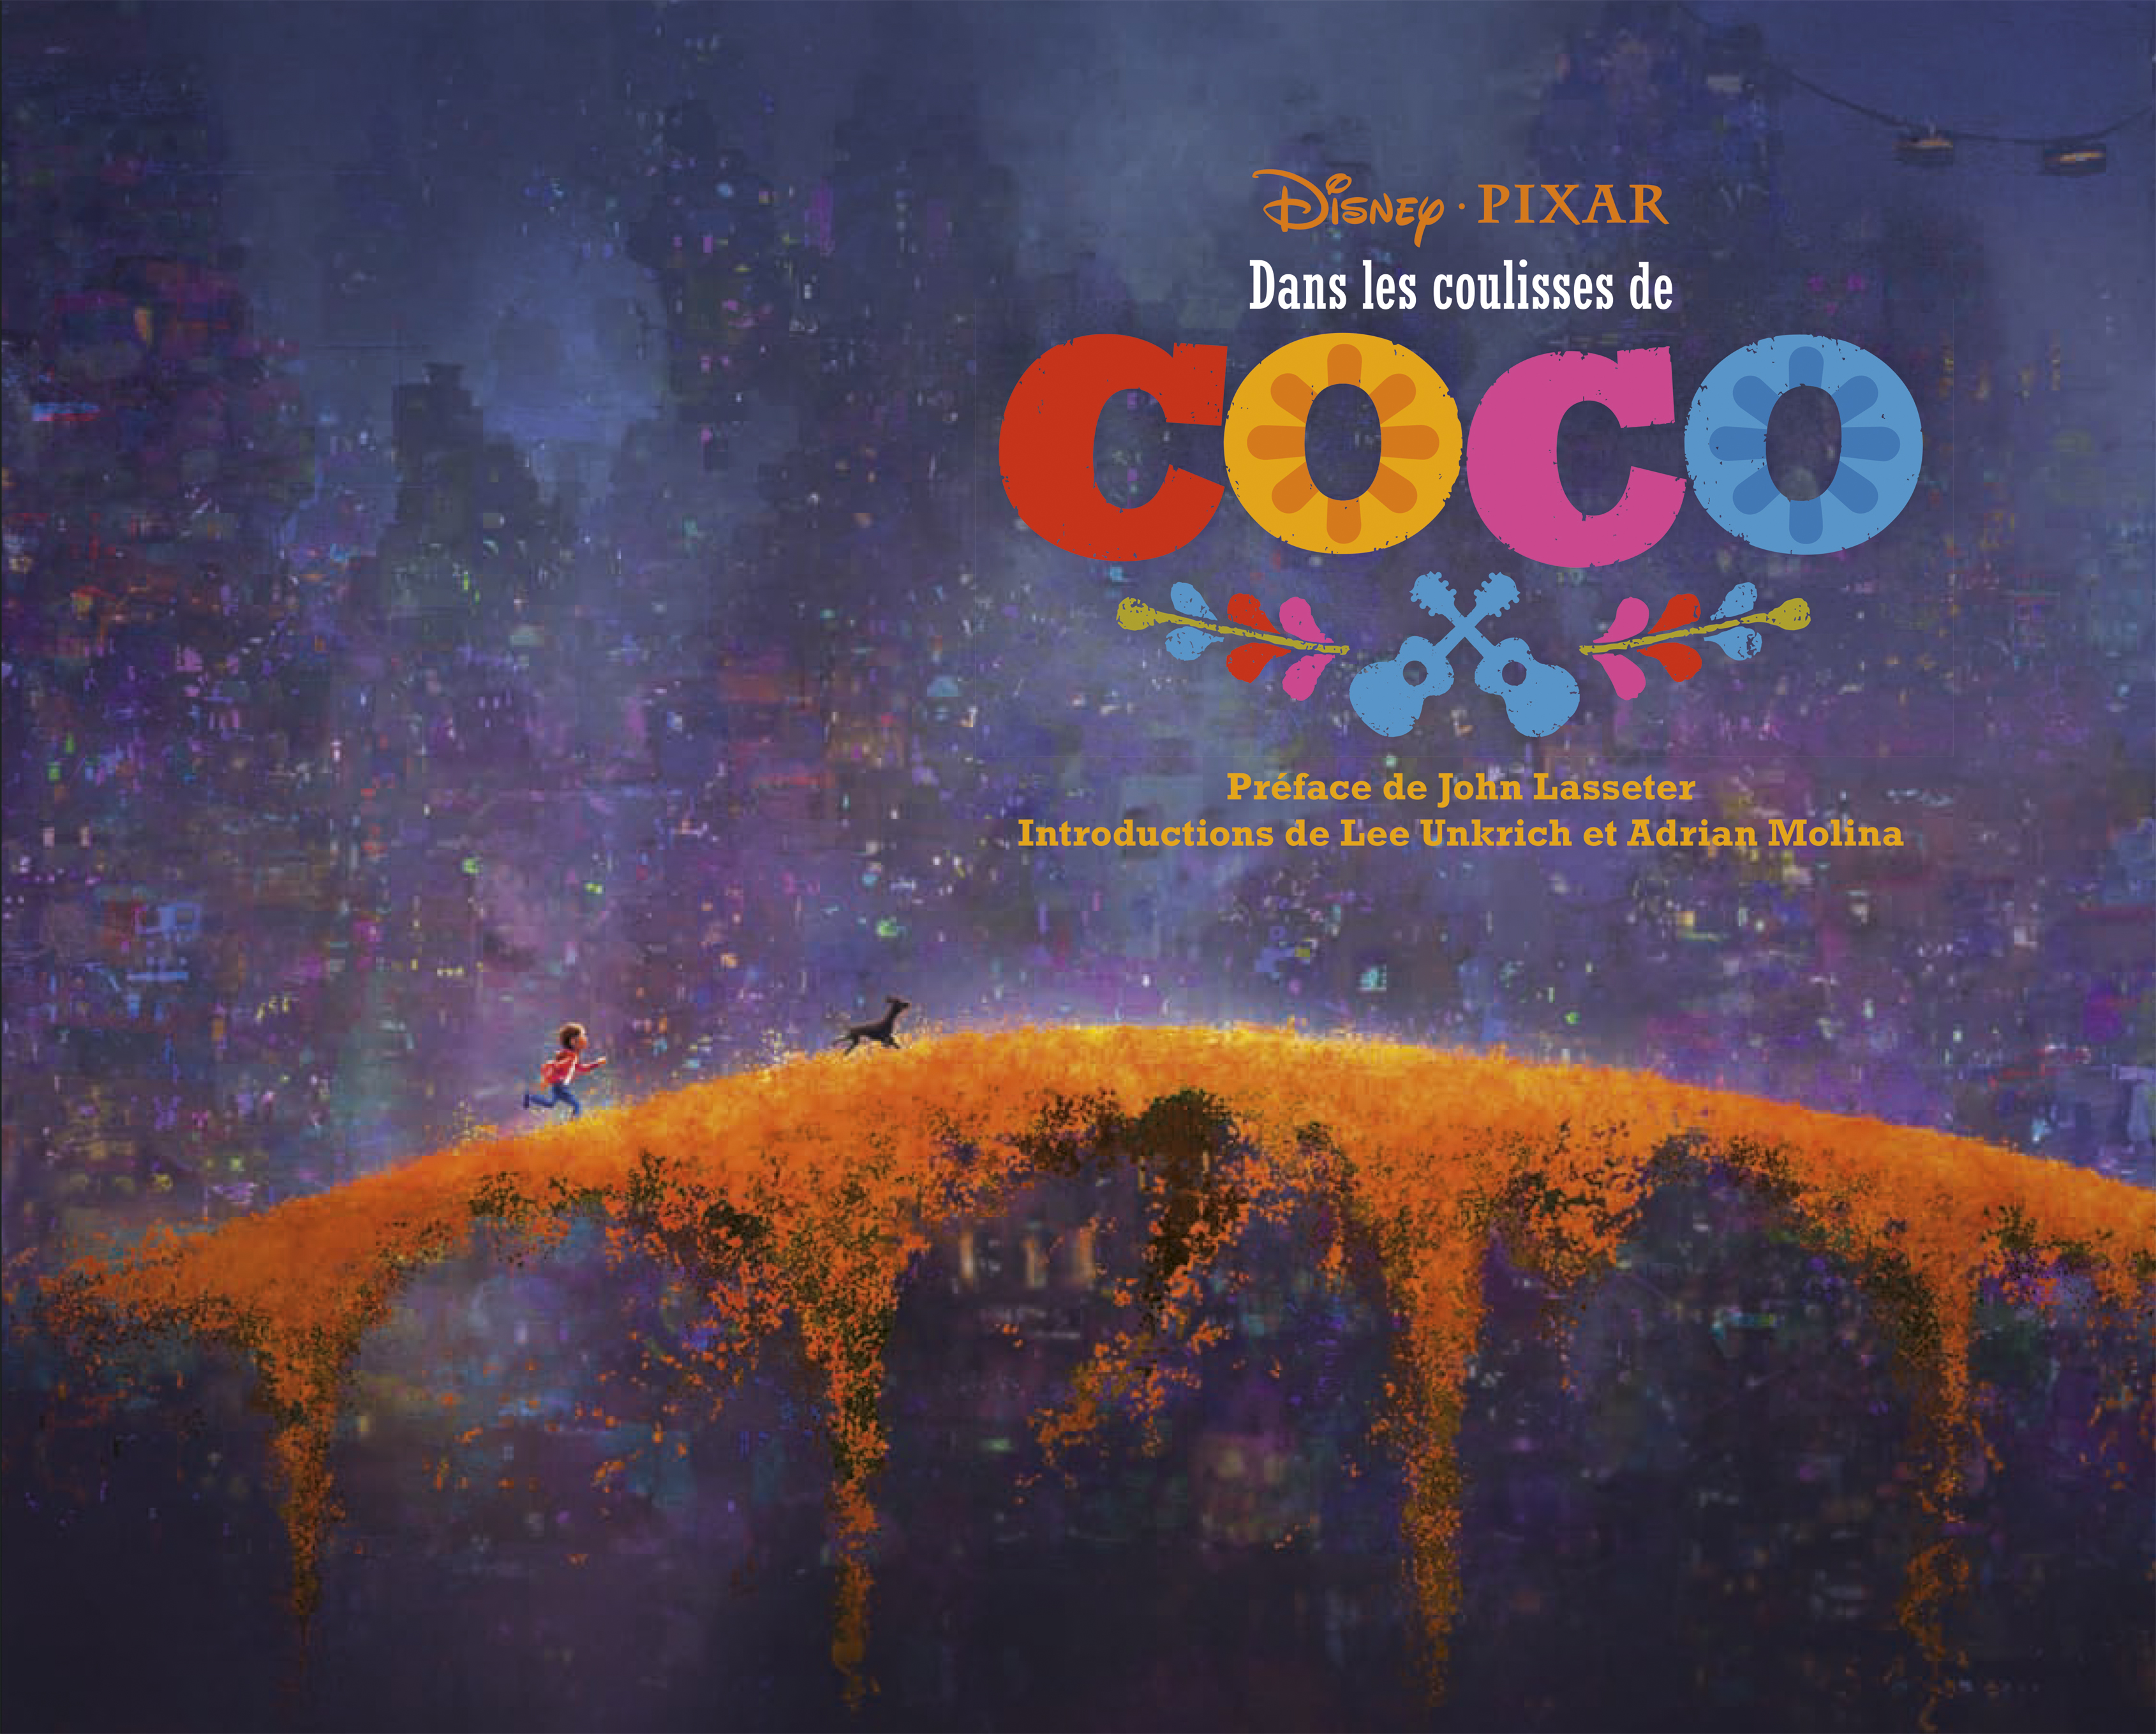 Dans les coulisses de Disney : Coco – Dans les coulisses de Disney : Coco - couv